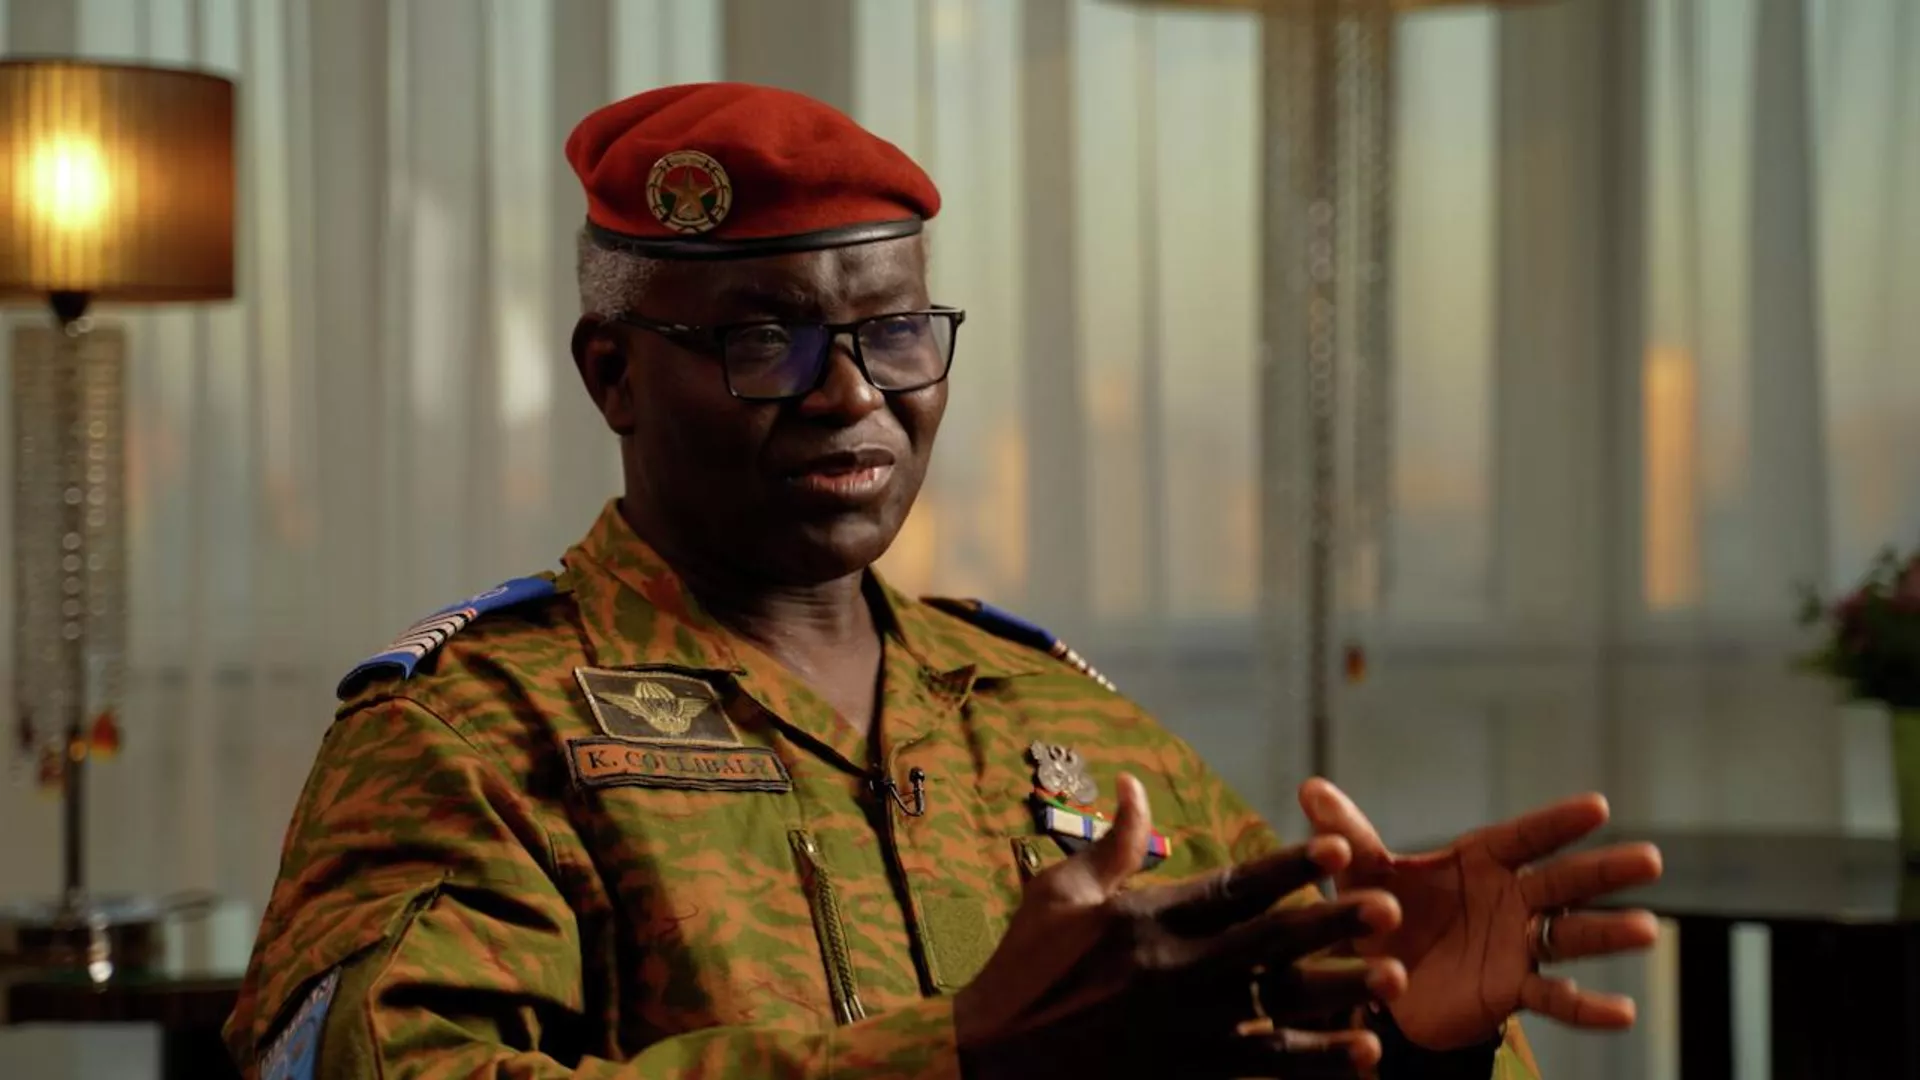 Image de Politique. Le gouvernement burkinabé envisage de soutenir le Niger en cas d'intervention militaire de la Communauté économique des États de l'Afrique de l'Ouest (CEDEAO). Selon le ministre burkinabé de la Défense, le colonel Kassoum Coulibaly, une telle agression est attendue et le Burkina Faso ne restera pas les bras croisés. "L’agression, on l'attend. De toute façon, on a déclaré sur le radio. Les chefs d'État ont déclaré: on est prêts, on soutiendra le Niger", a martelé le colonel burkinabè. Coulibaly a également exprimé ses préoccupations quant à la logique des pays membres de la CEDEAO, créée pour promouvoir la coopération économique, de s'engager dans des conflits internes. Si une telle intervention a lieu, "on est même prêt à se retirer de la Communauté économique des États de l’Afrique", a indiqué le ministre de la Défense. Quelle est votre analyse de la situation ?